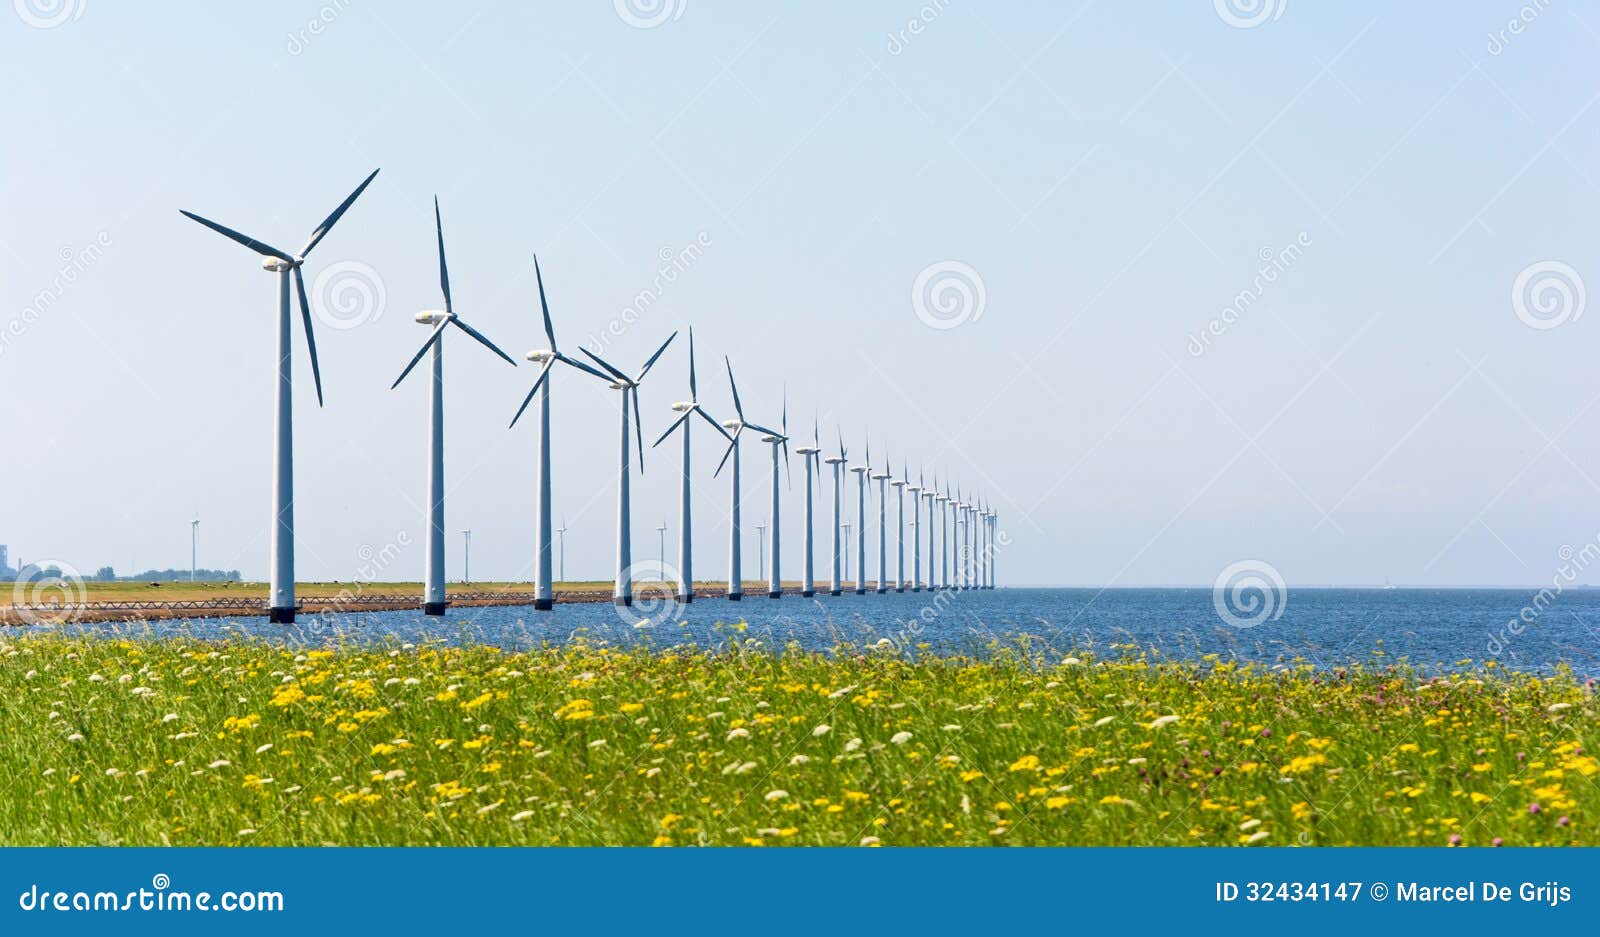 wind energy windmills